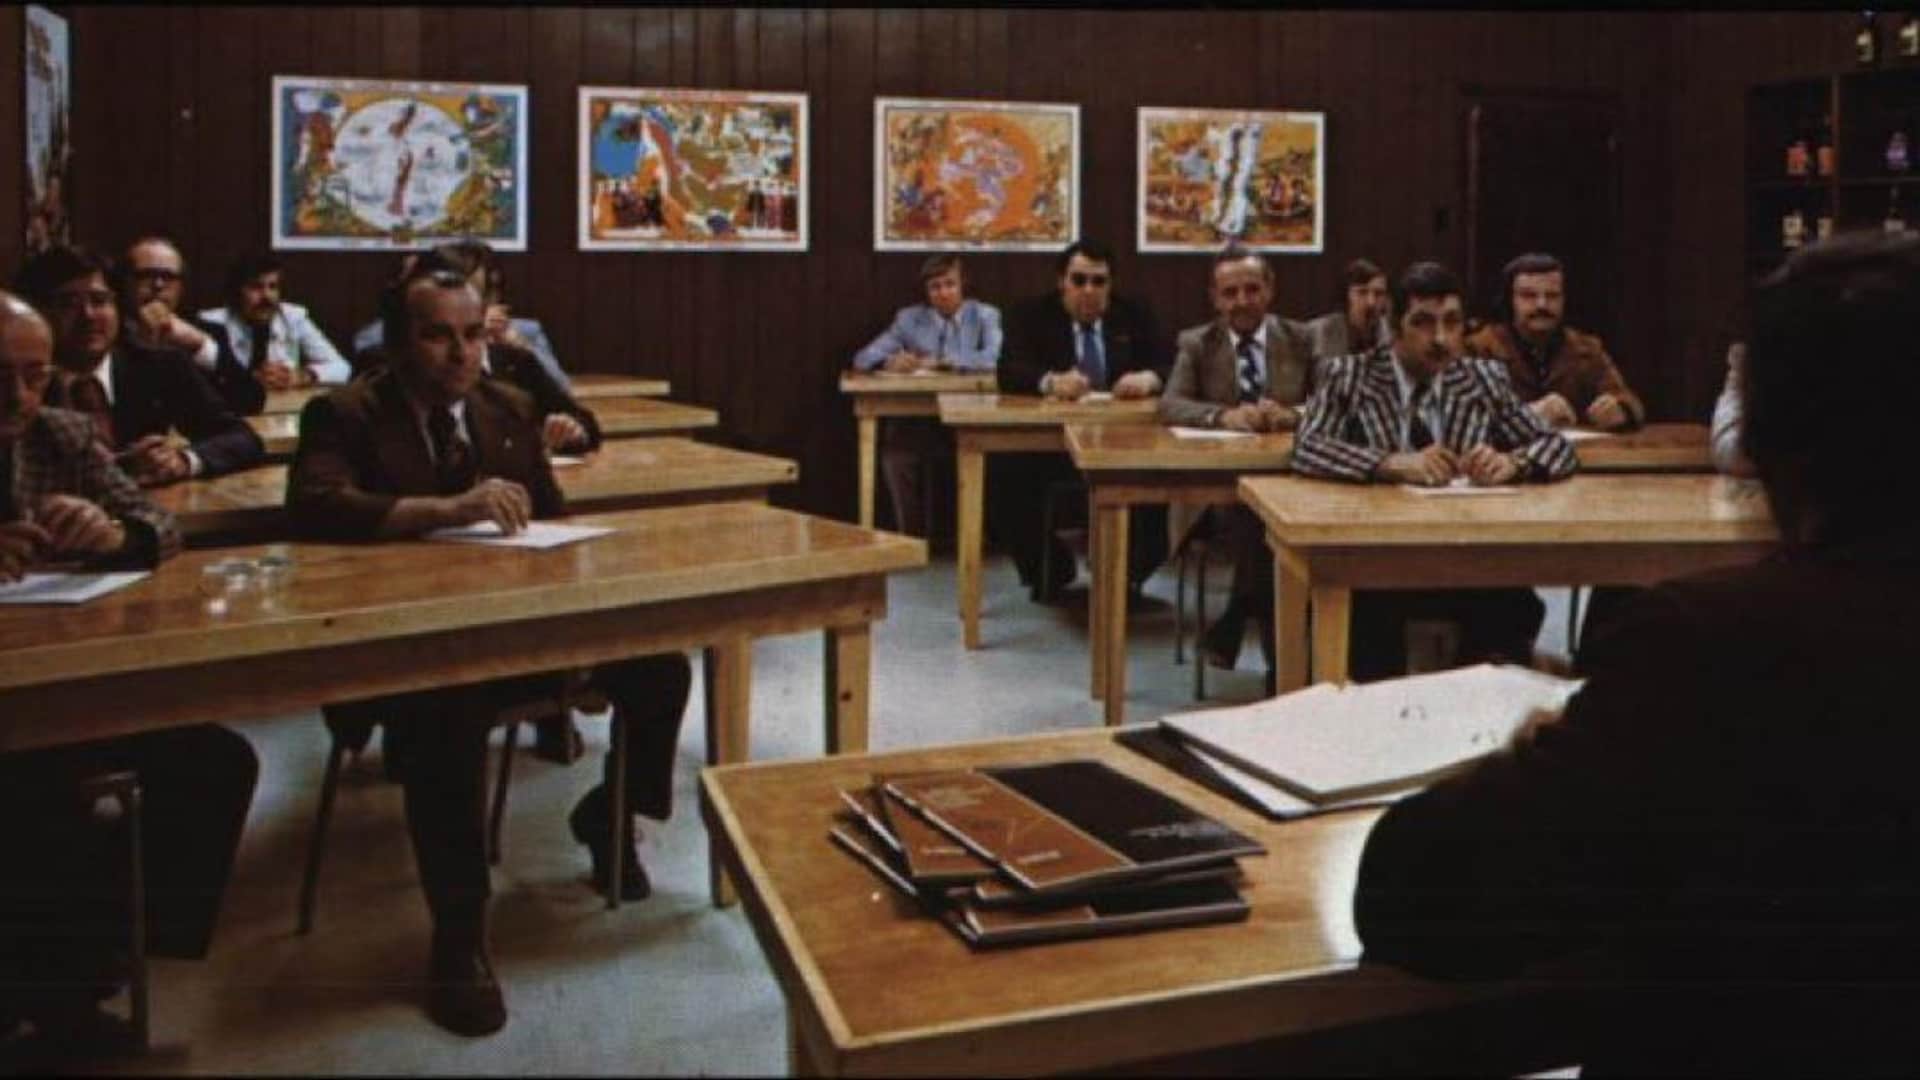 Des hommes écoutent un professeur, on les voit de face, ils sont tous en complet et en cravate, à la mode des années 1970. Au mur, on voit des bouteilles, et des cartes au fond. Les murs sont tous en lattes de bois foncé. 